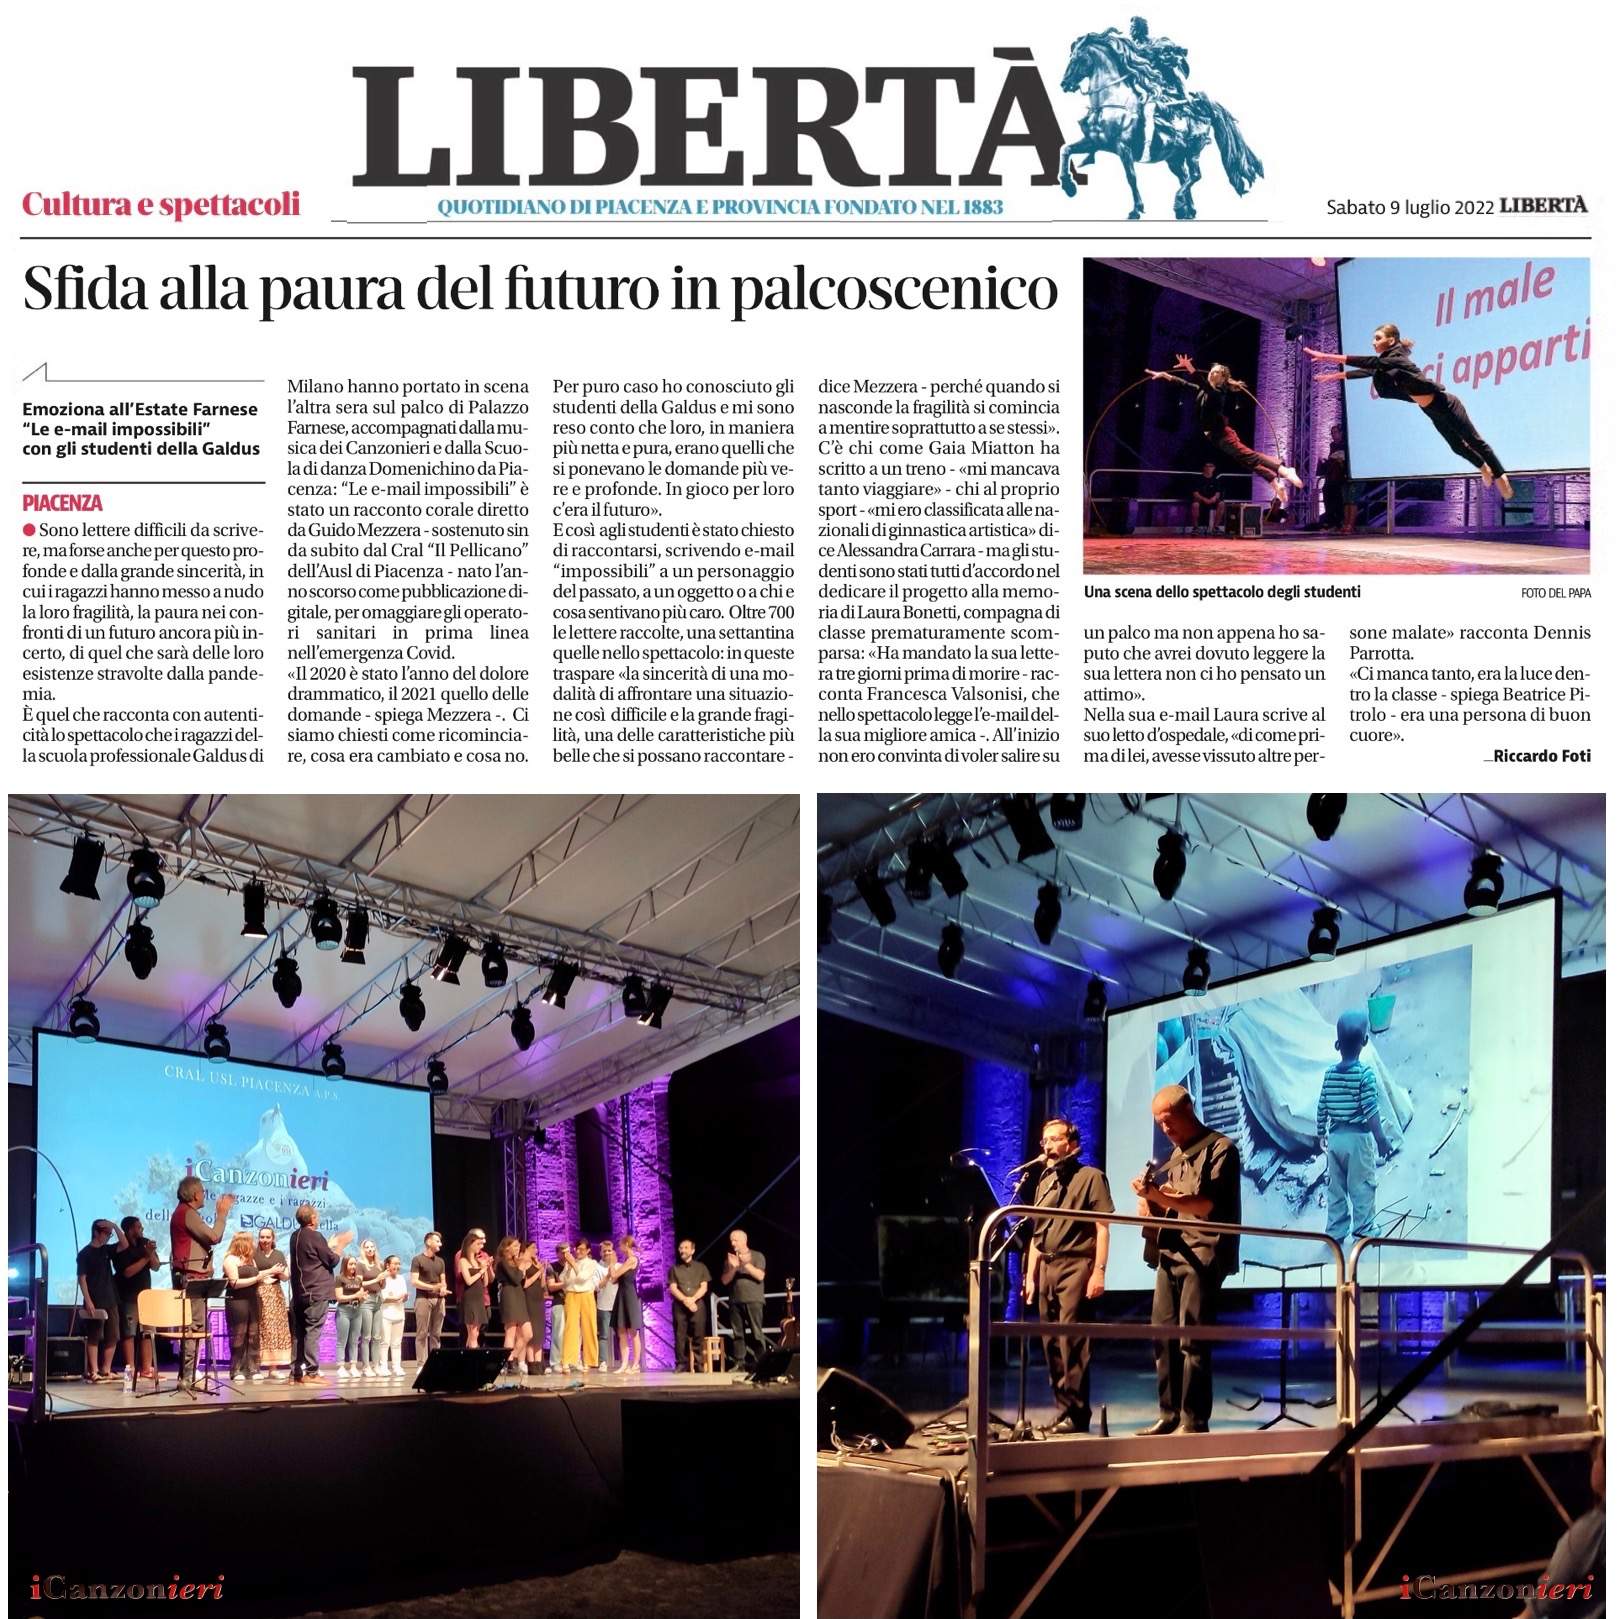 Articolo del quotidiano di Piacenza LIBERTA'